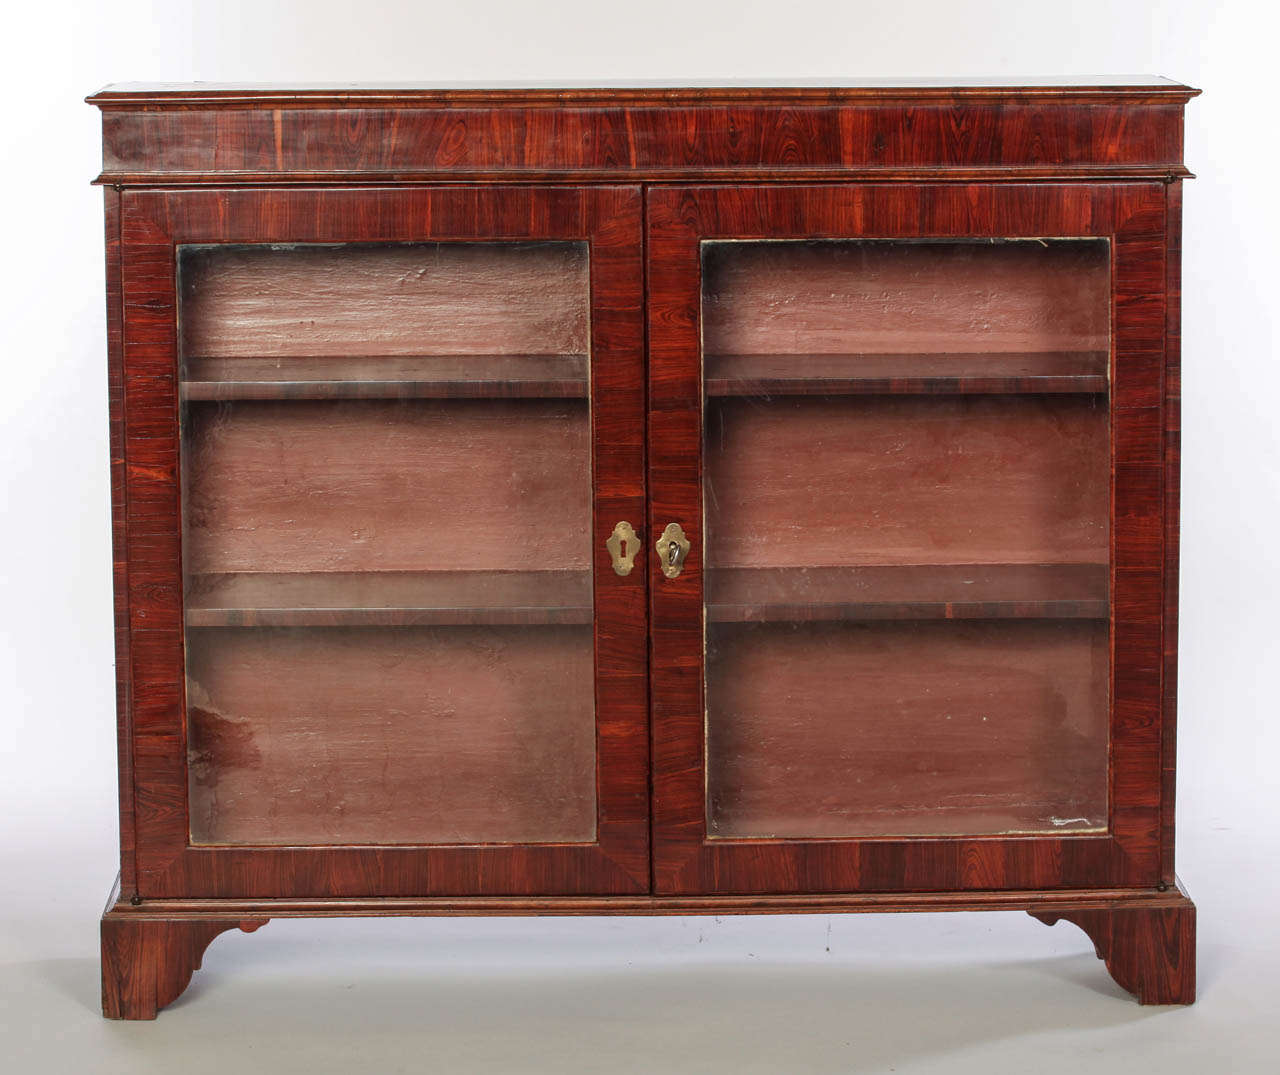 A Fine Nord Italian 18'century Parquetry Bookcase.

cm 127x109x30